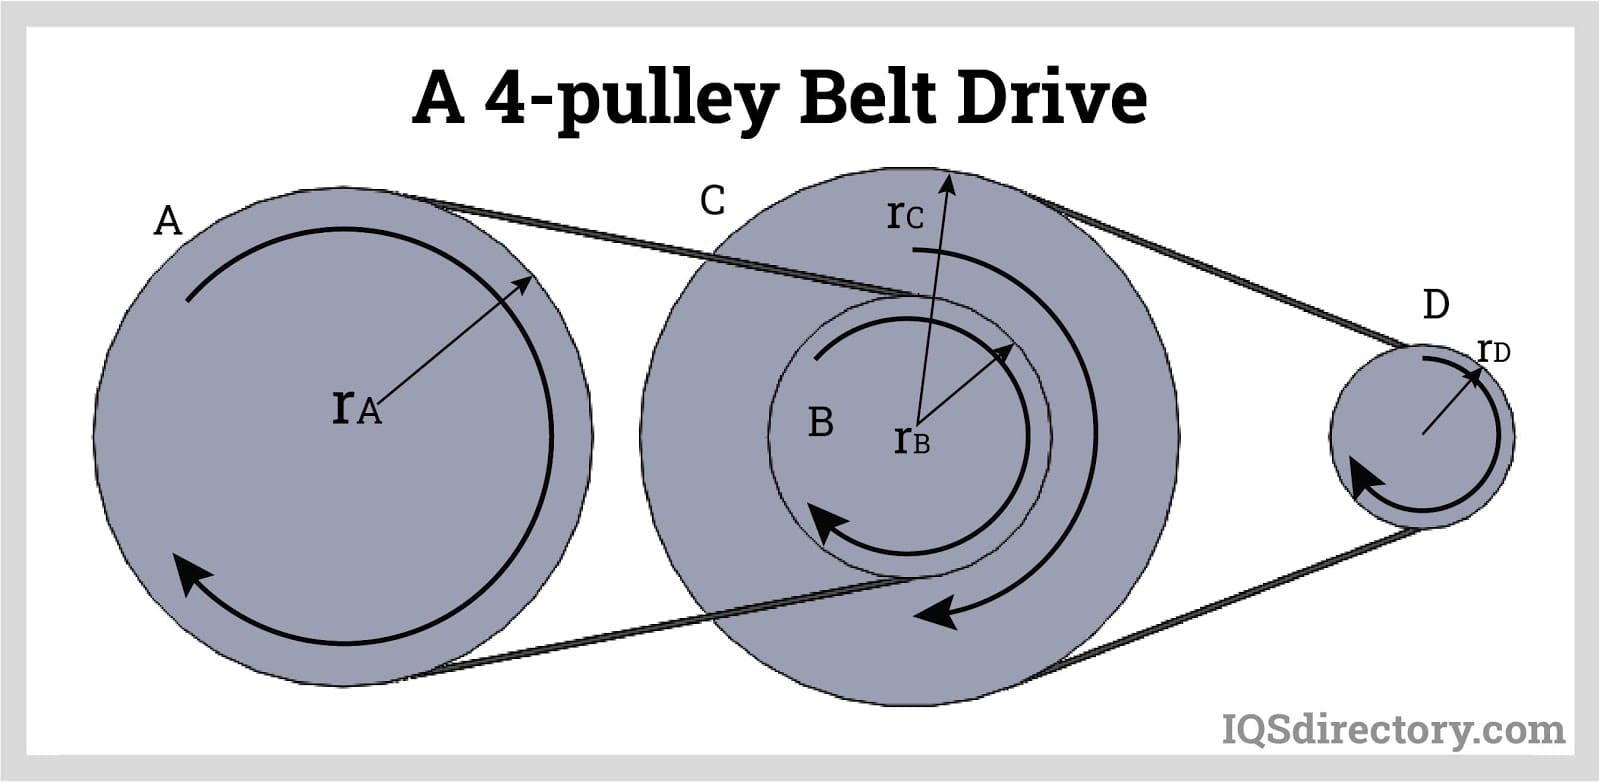 Standard V-Belt, A Type